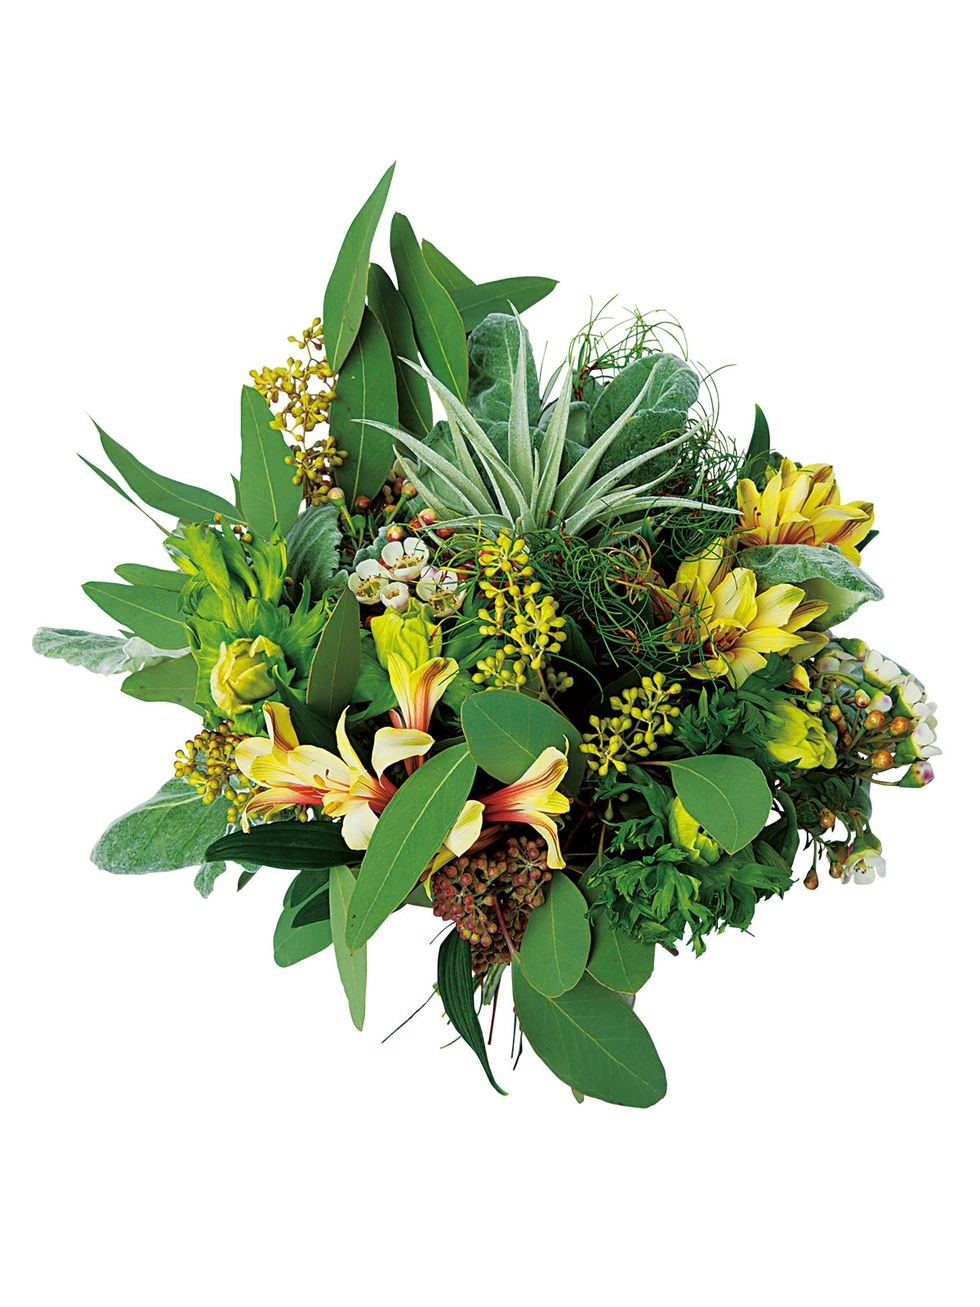 Flower, Bouquet, Floristry, Plant, Cut flowers, Flower Arranging, Flowering plant, Yellow, Floral design, Leaf, 